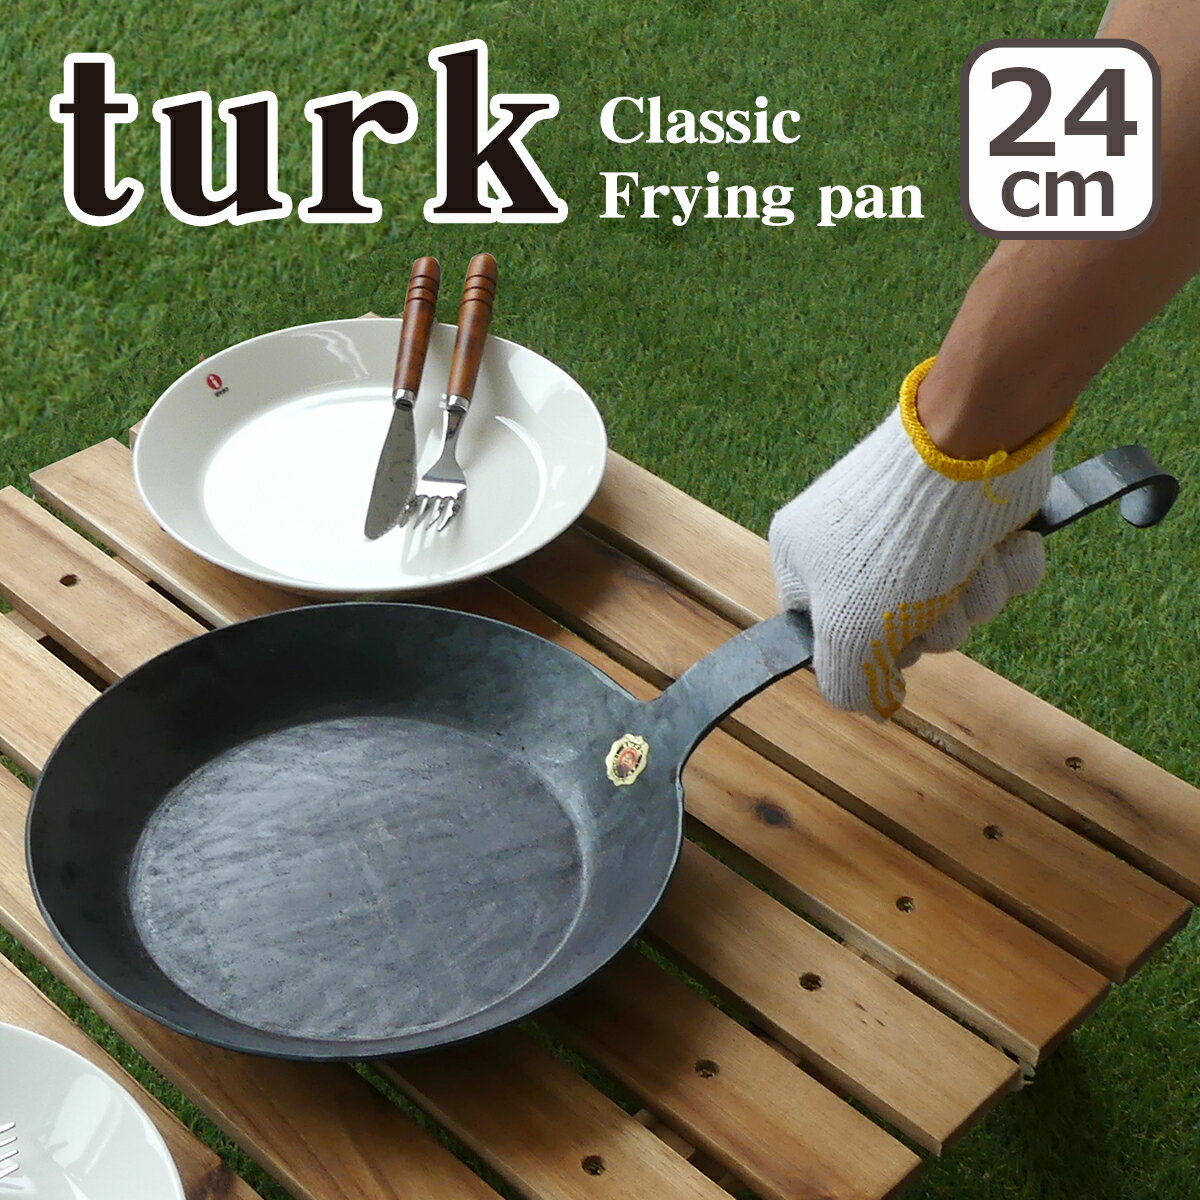 【ポイント3倍 5/15】ターク フライパン クラシック 24cm 65524 turk Classic Frying pan